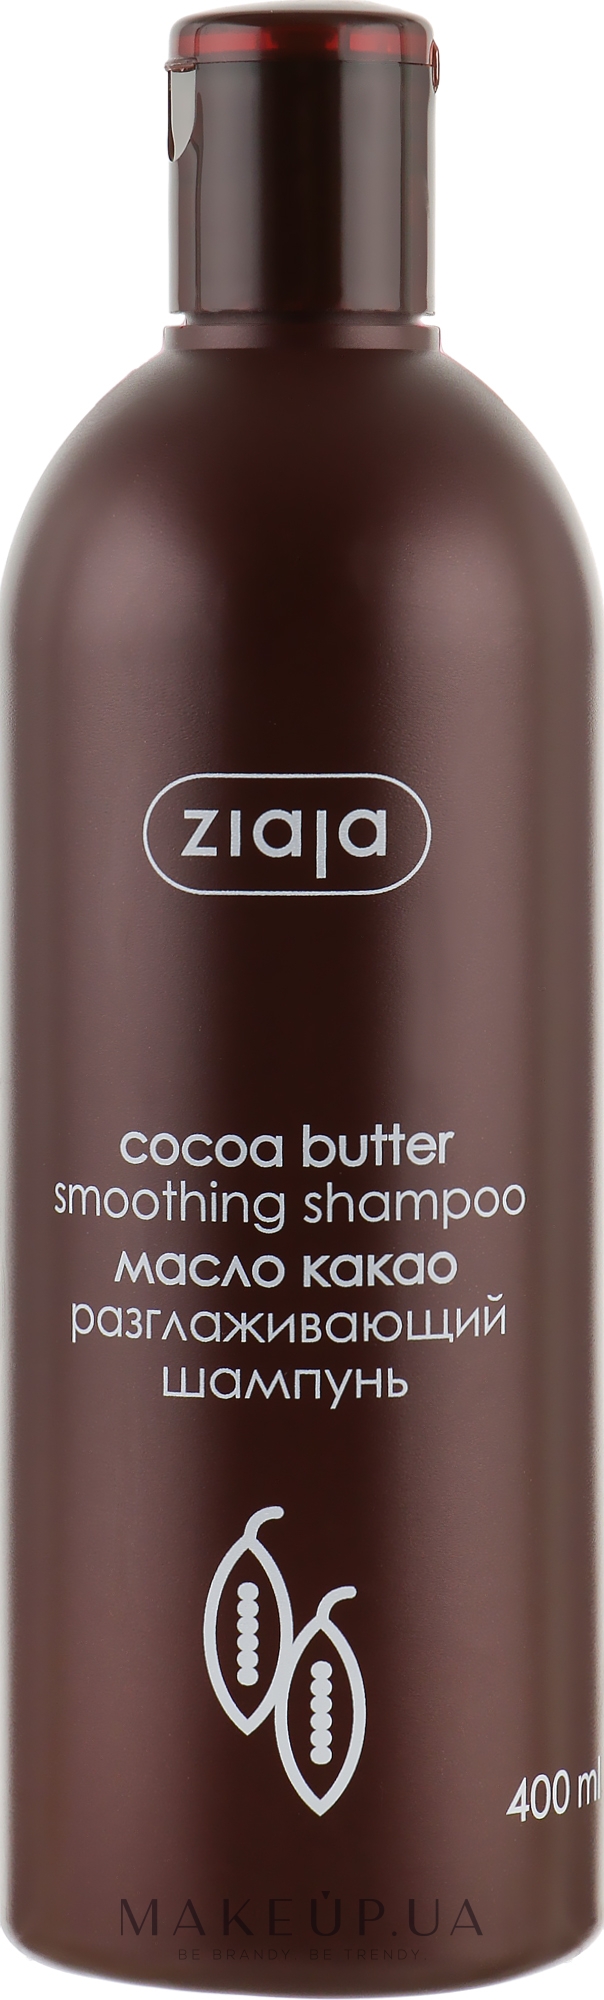 Шампунь для сухих и поврежденных волос "Масло какао" - Ziaja Shampoo for Dry and Damaged Hair — фото 400ml